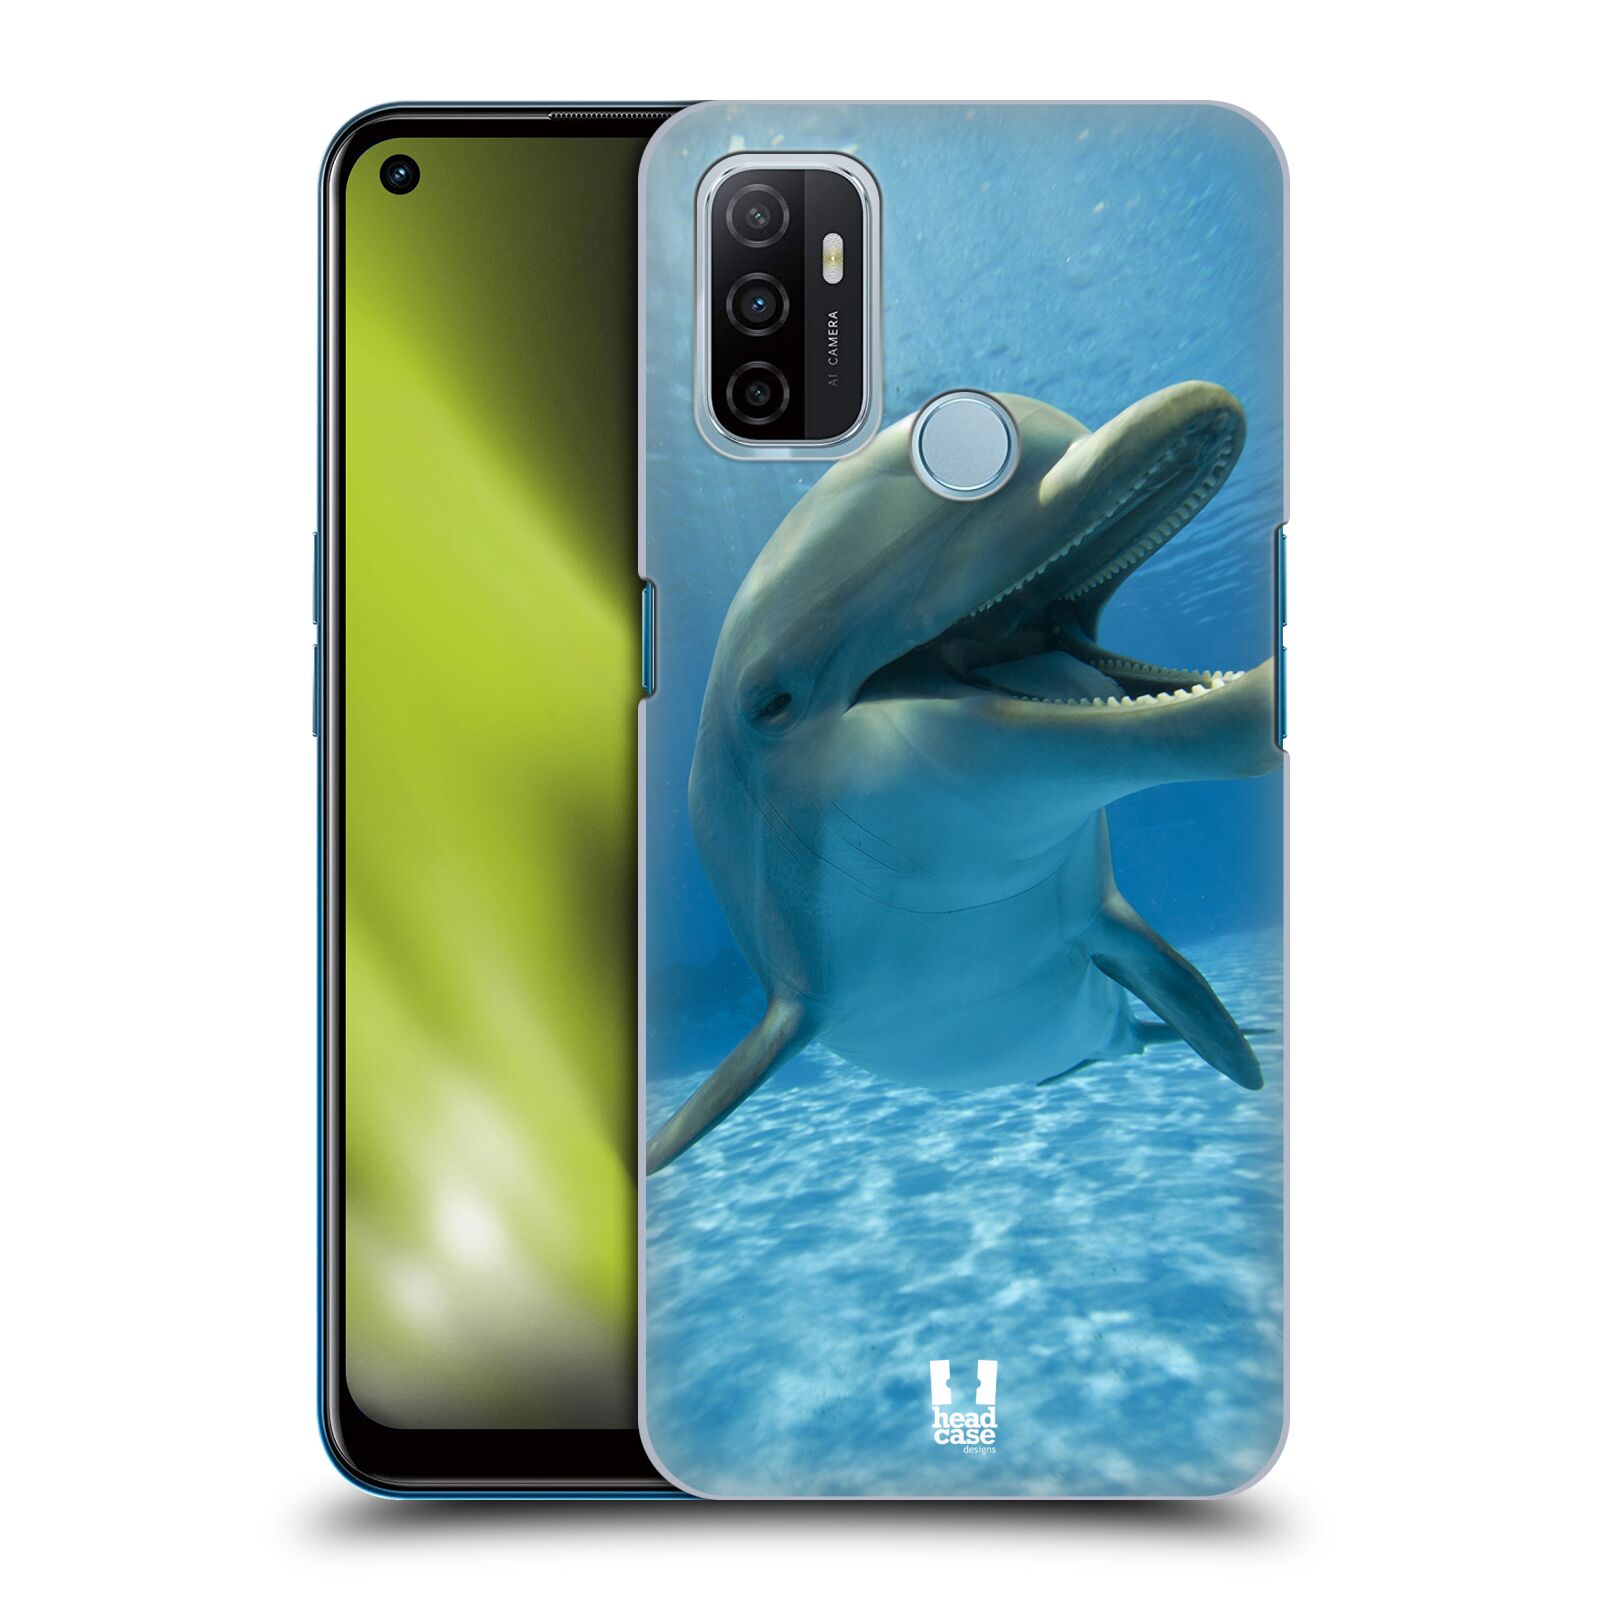 Zadní obal pro mobil Oppo A53 / A53s - HEAD CASE - Svět zvířat delfín v moři